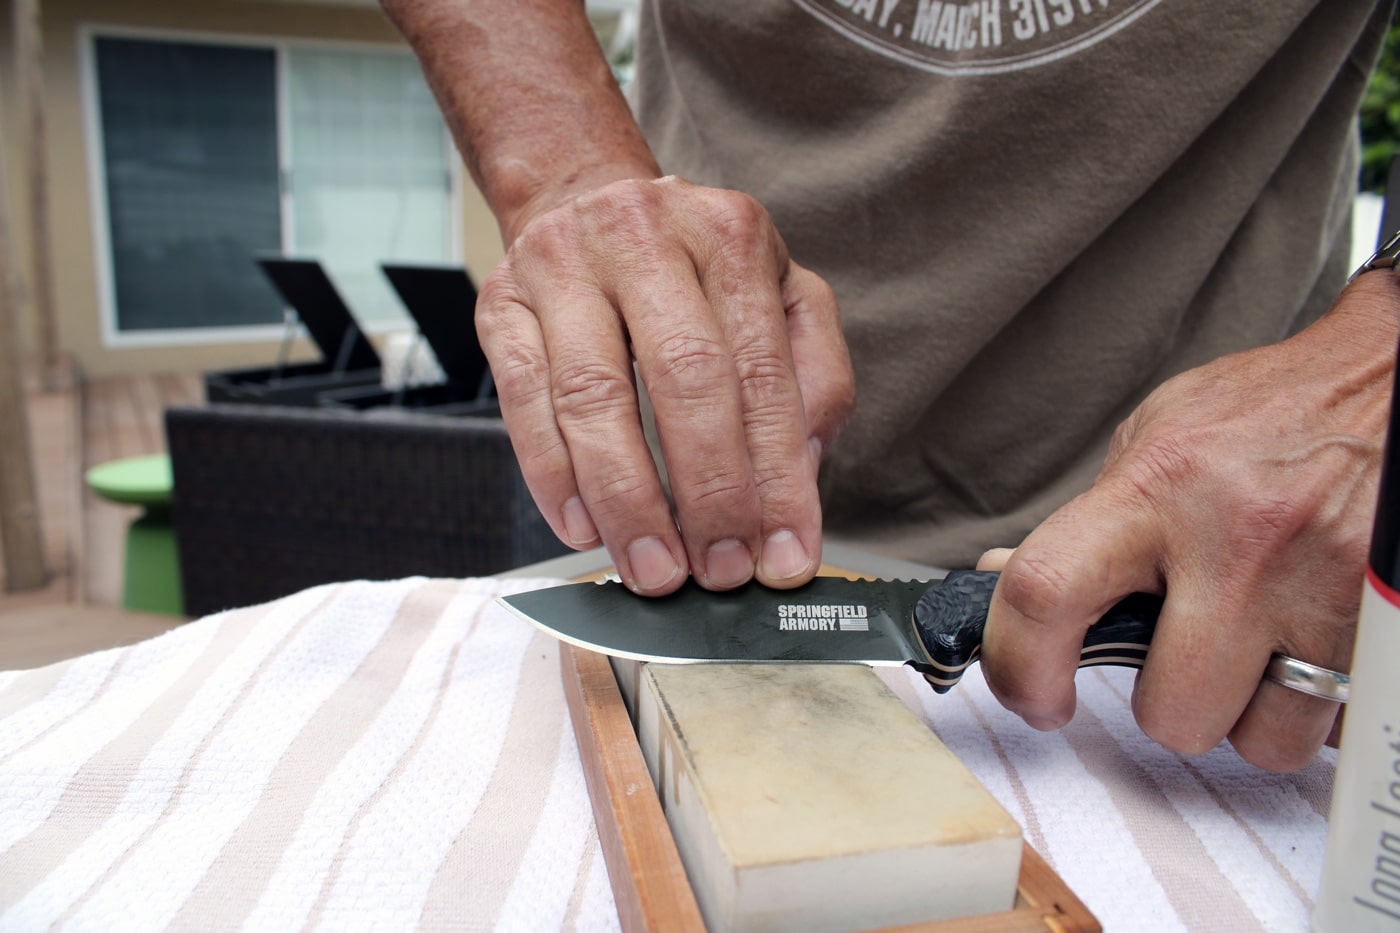 Steve's Knife Sharpening Site - Portable Field Sharpener